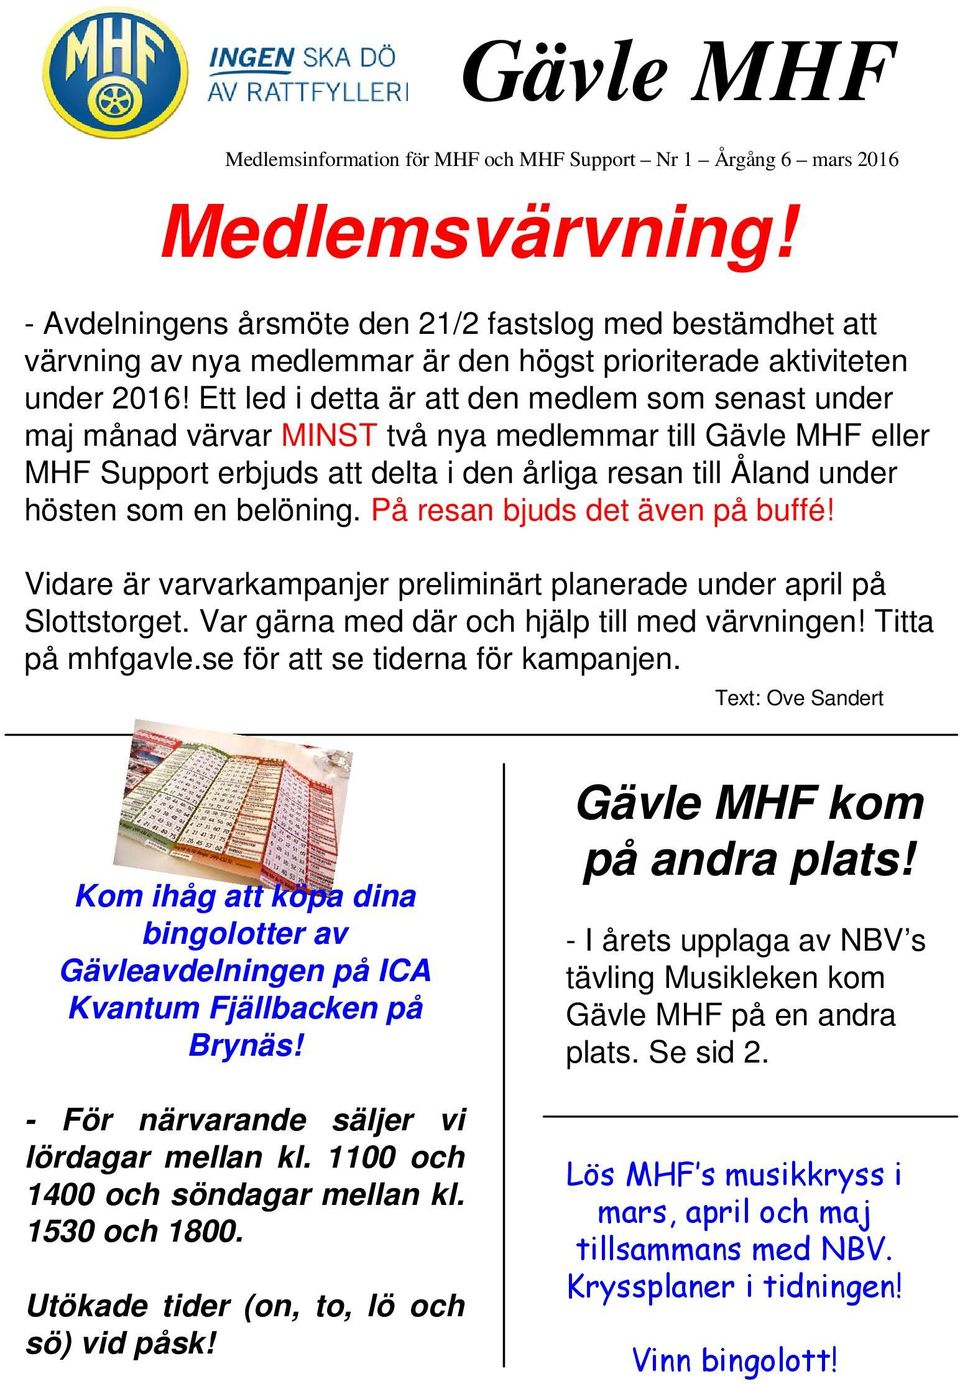 Ett led i detta är att den medlem som senast under maj månad värvar MINST två nya medlemmar till Gävle MHF eller MHF Support erbjuds att delta i den årliga resan till Åland under hösten som en